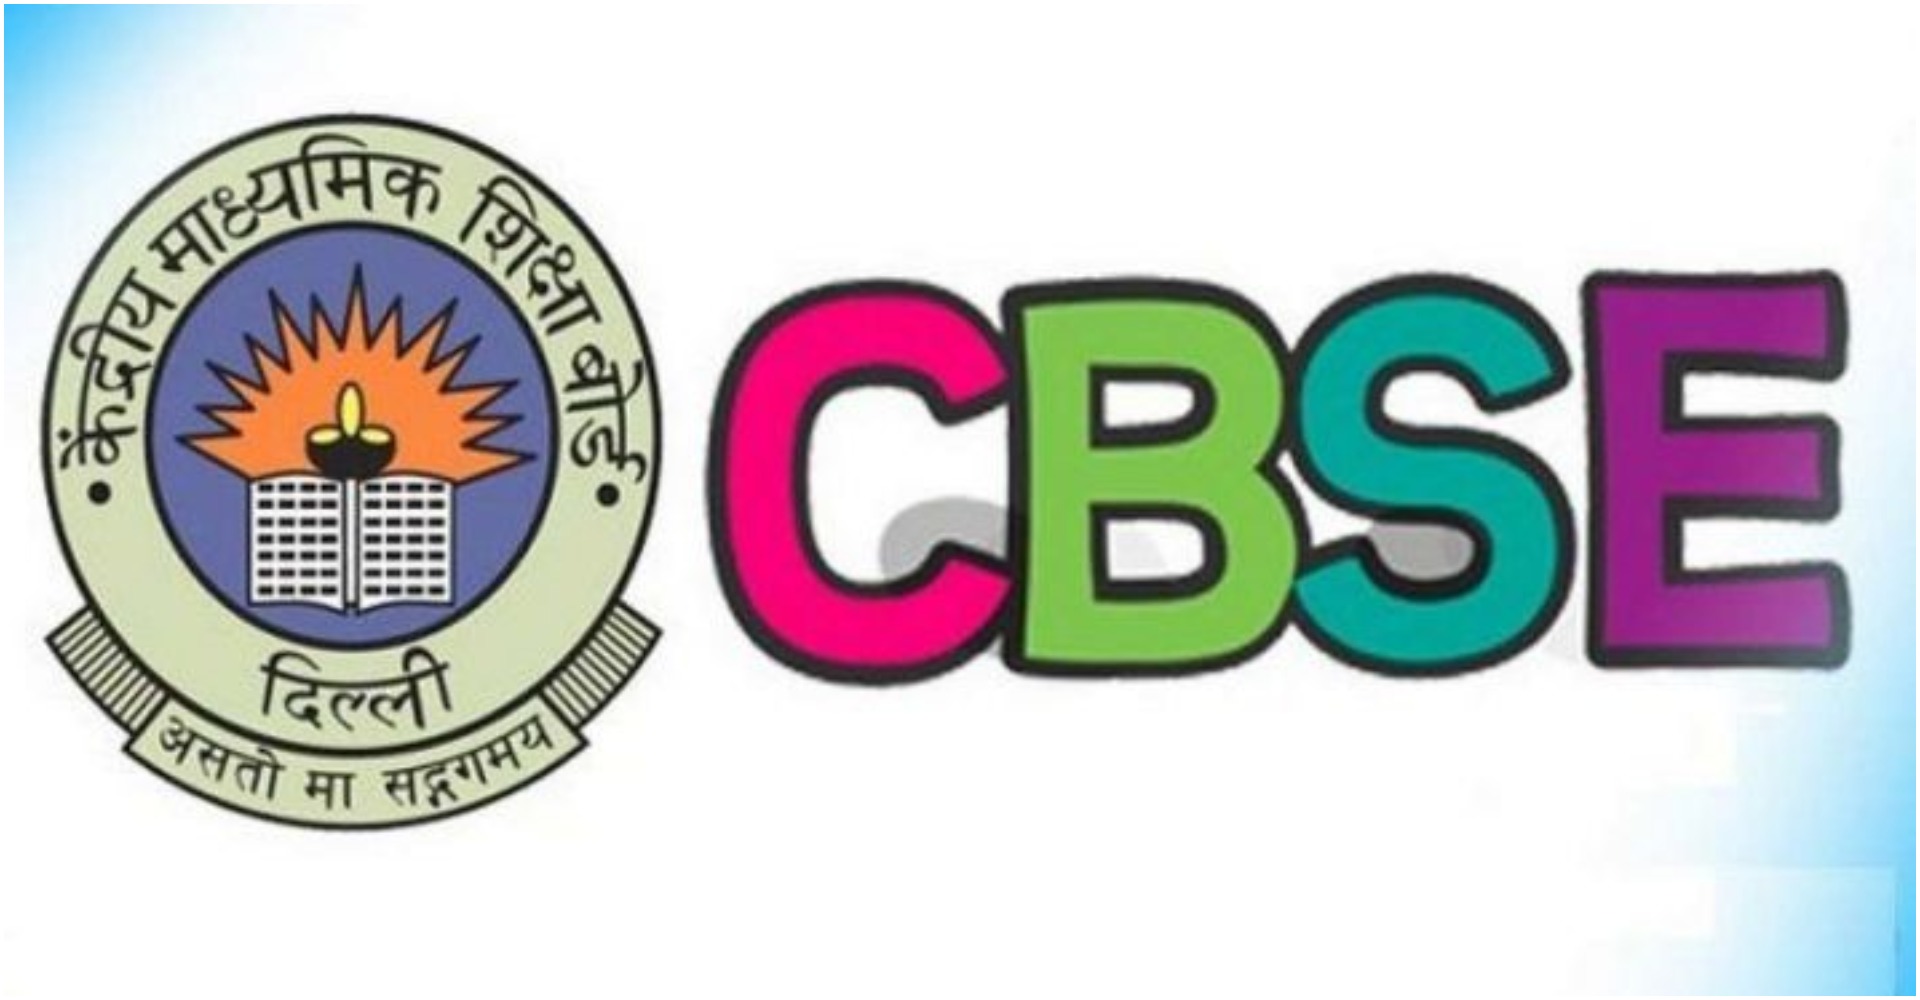 CBSE update: सोशल मीडिया पर सीबीएसई एग्जाम की फर्जी अफवा फैलाना पड़ सकता है भारी, फेक न्यूज फैलाने पर होगा FIR